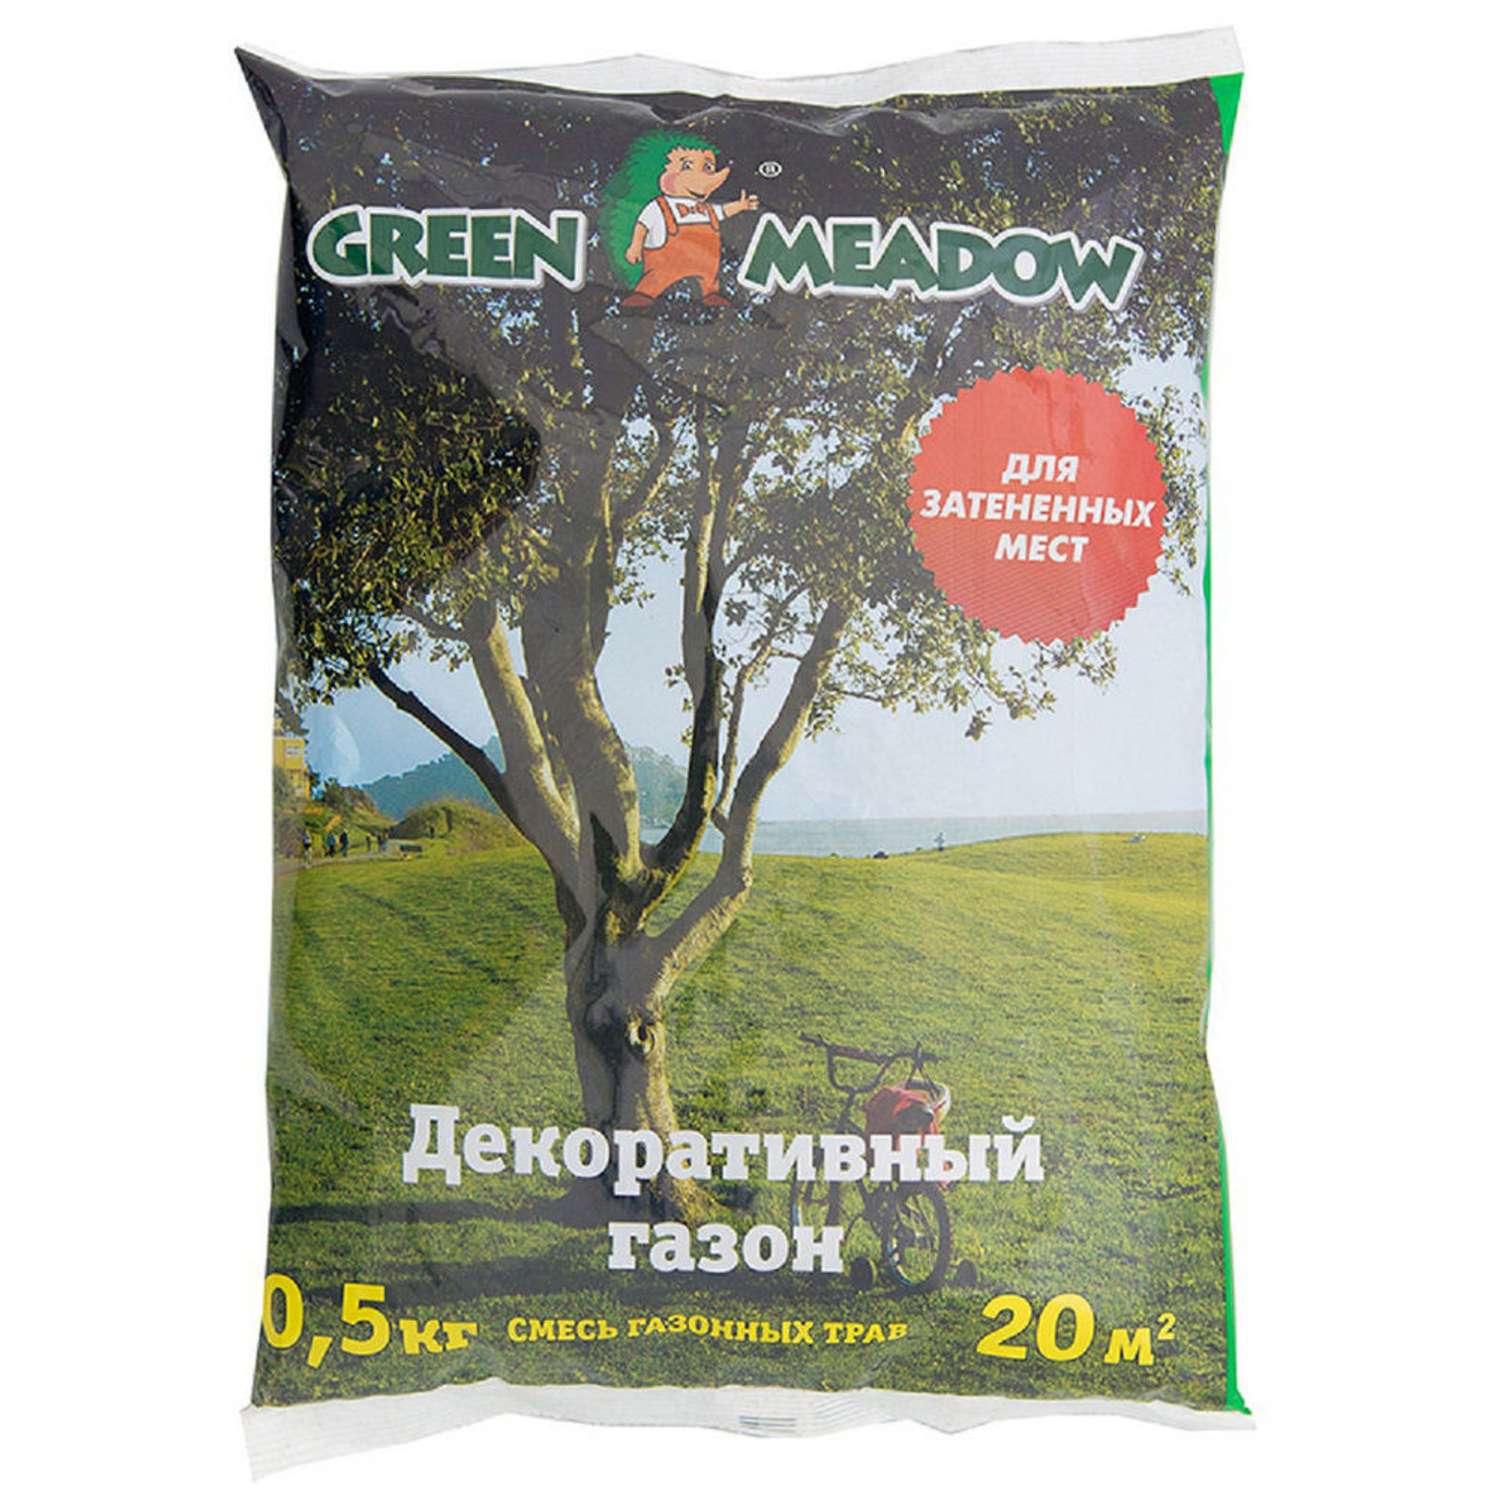 Семена трав GREEN MEADOW для затененных мест декоративного газона 0.5 кг - фото 1